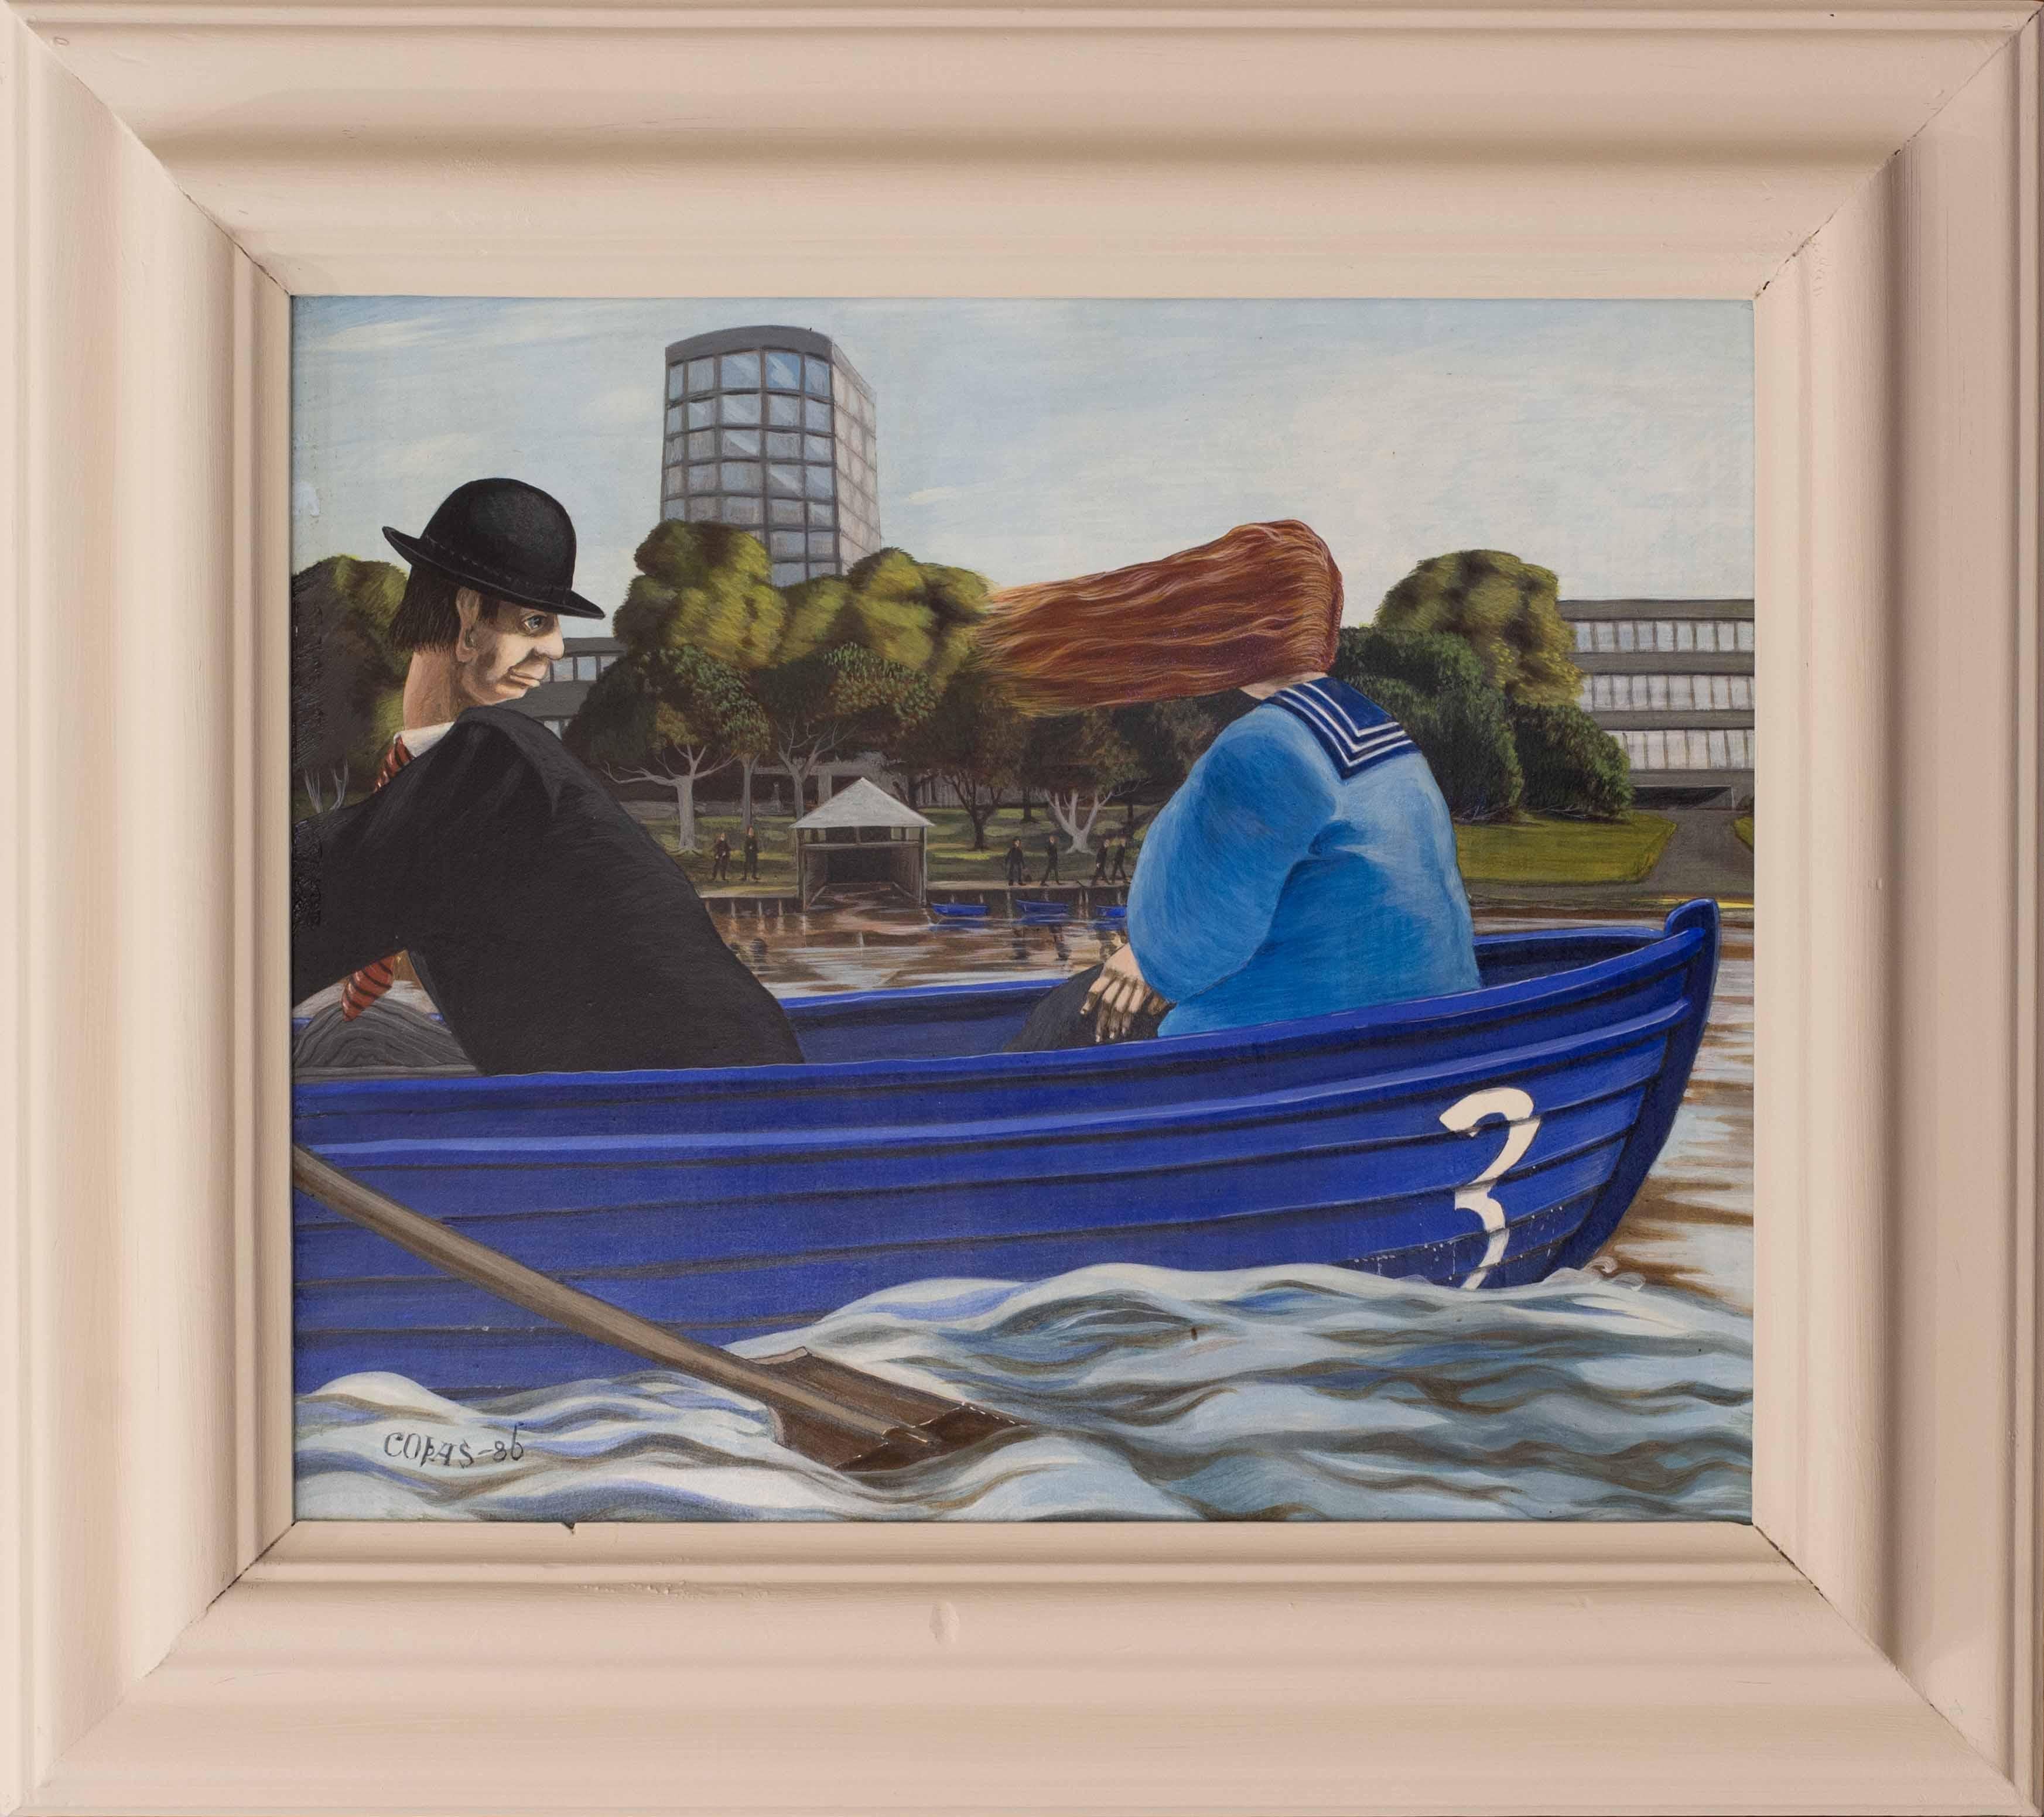 Figurative Painting Ronnie Copas - Peinture surraliste britannique du 20e sicle reprsentant un djeuner sur le lac, 1986